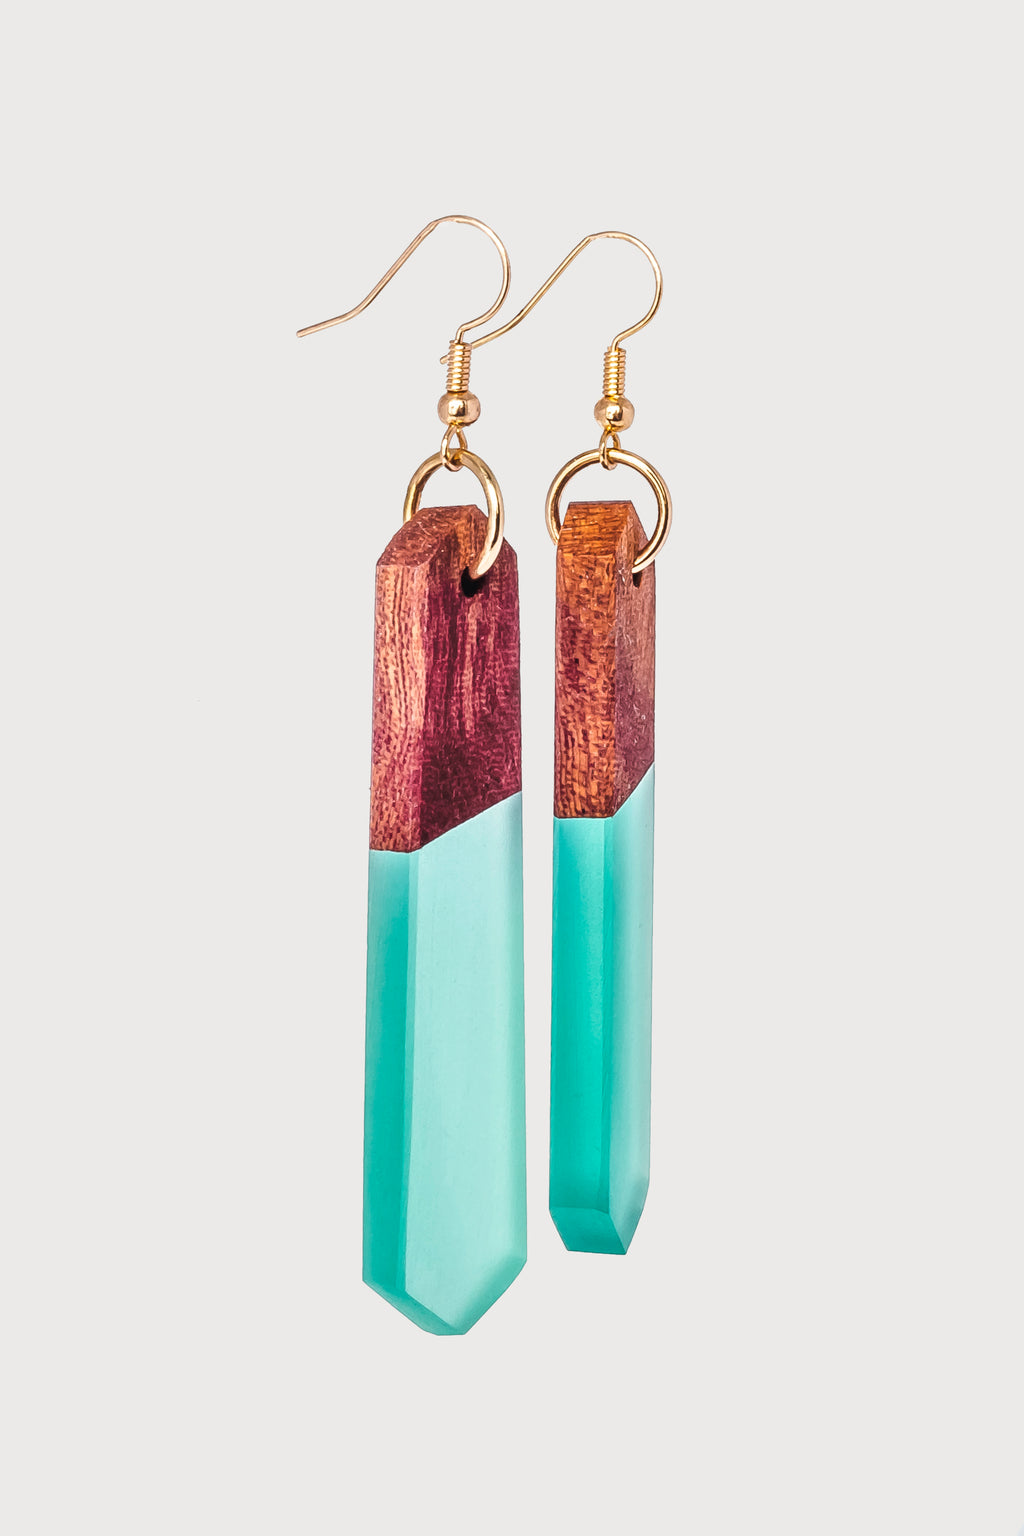 Wood + Resin Earrings - OAK + IVY